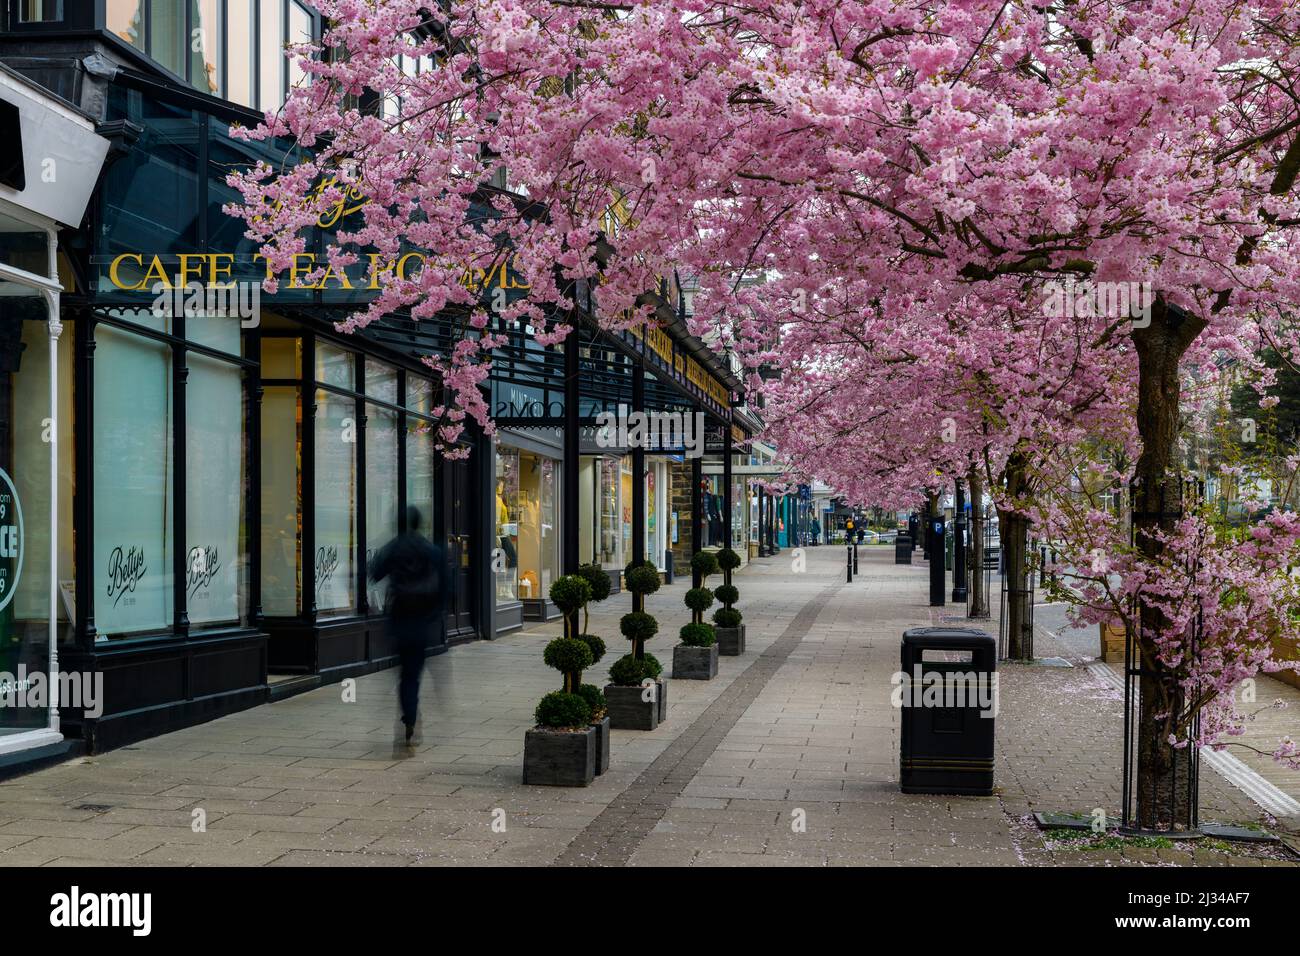 Centro storico di primavera (splendidi e colorati ciliegi in fiore, elegante ristorante-caffetteria di fronte al negozio) - The Grove, Ilkley, Yorkshire, Inghilterra, Regno Unito. Foto Stock